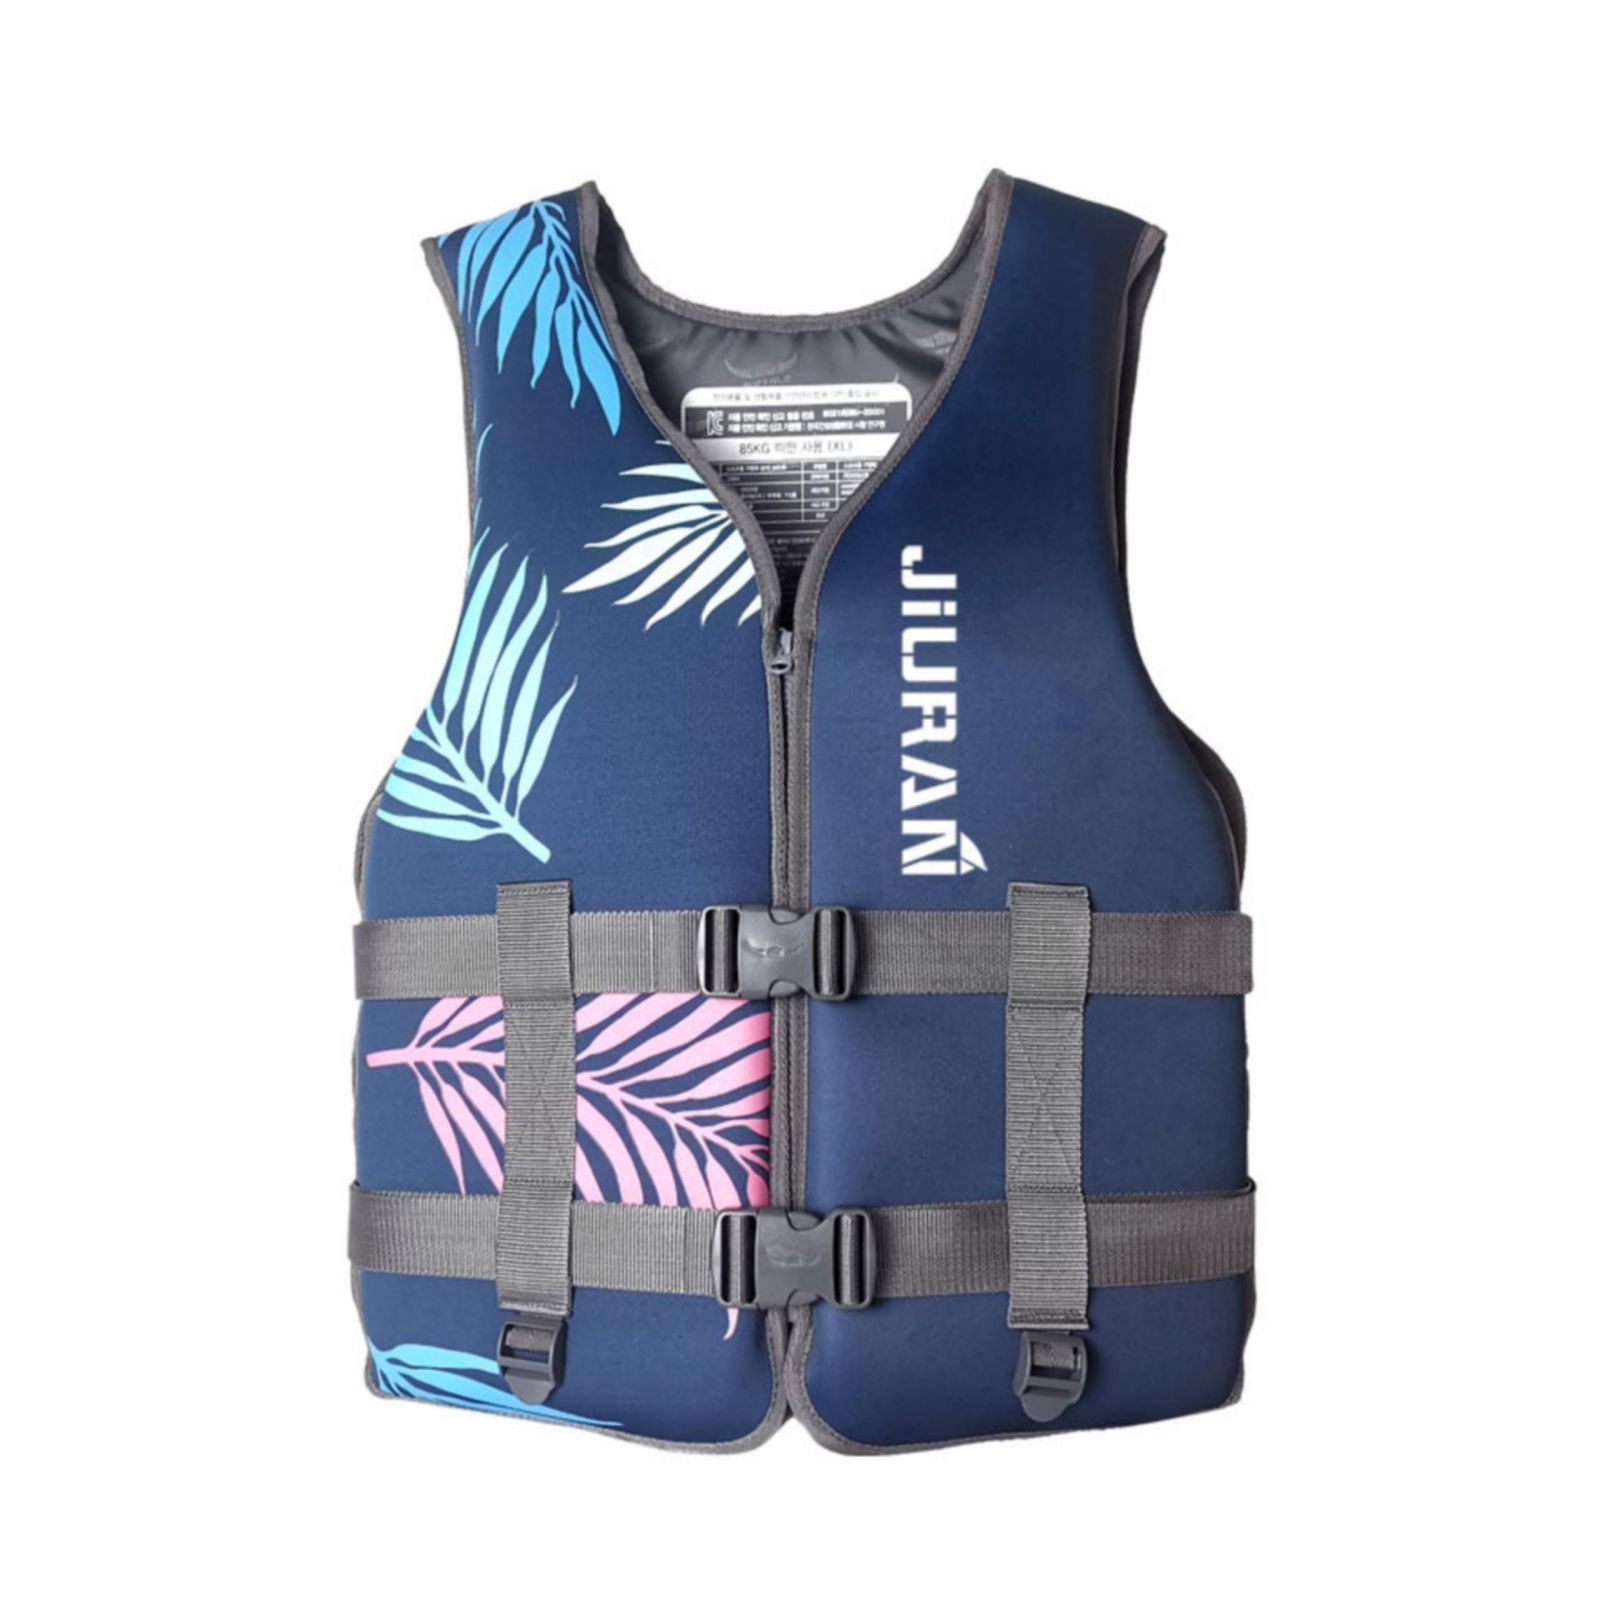 Life Jacket for Unisex Adjustable Safety Breathable Life Vest for Men Women – XL, Blue